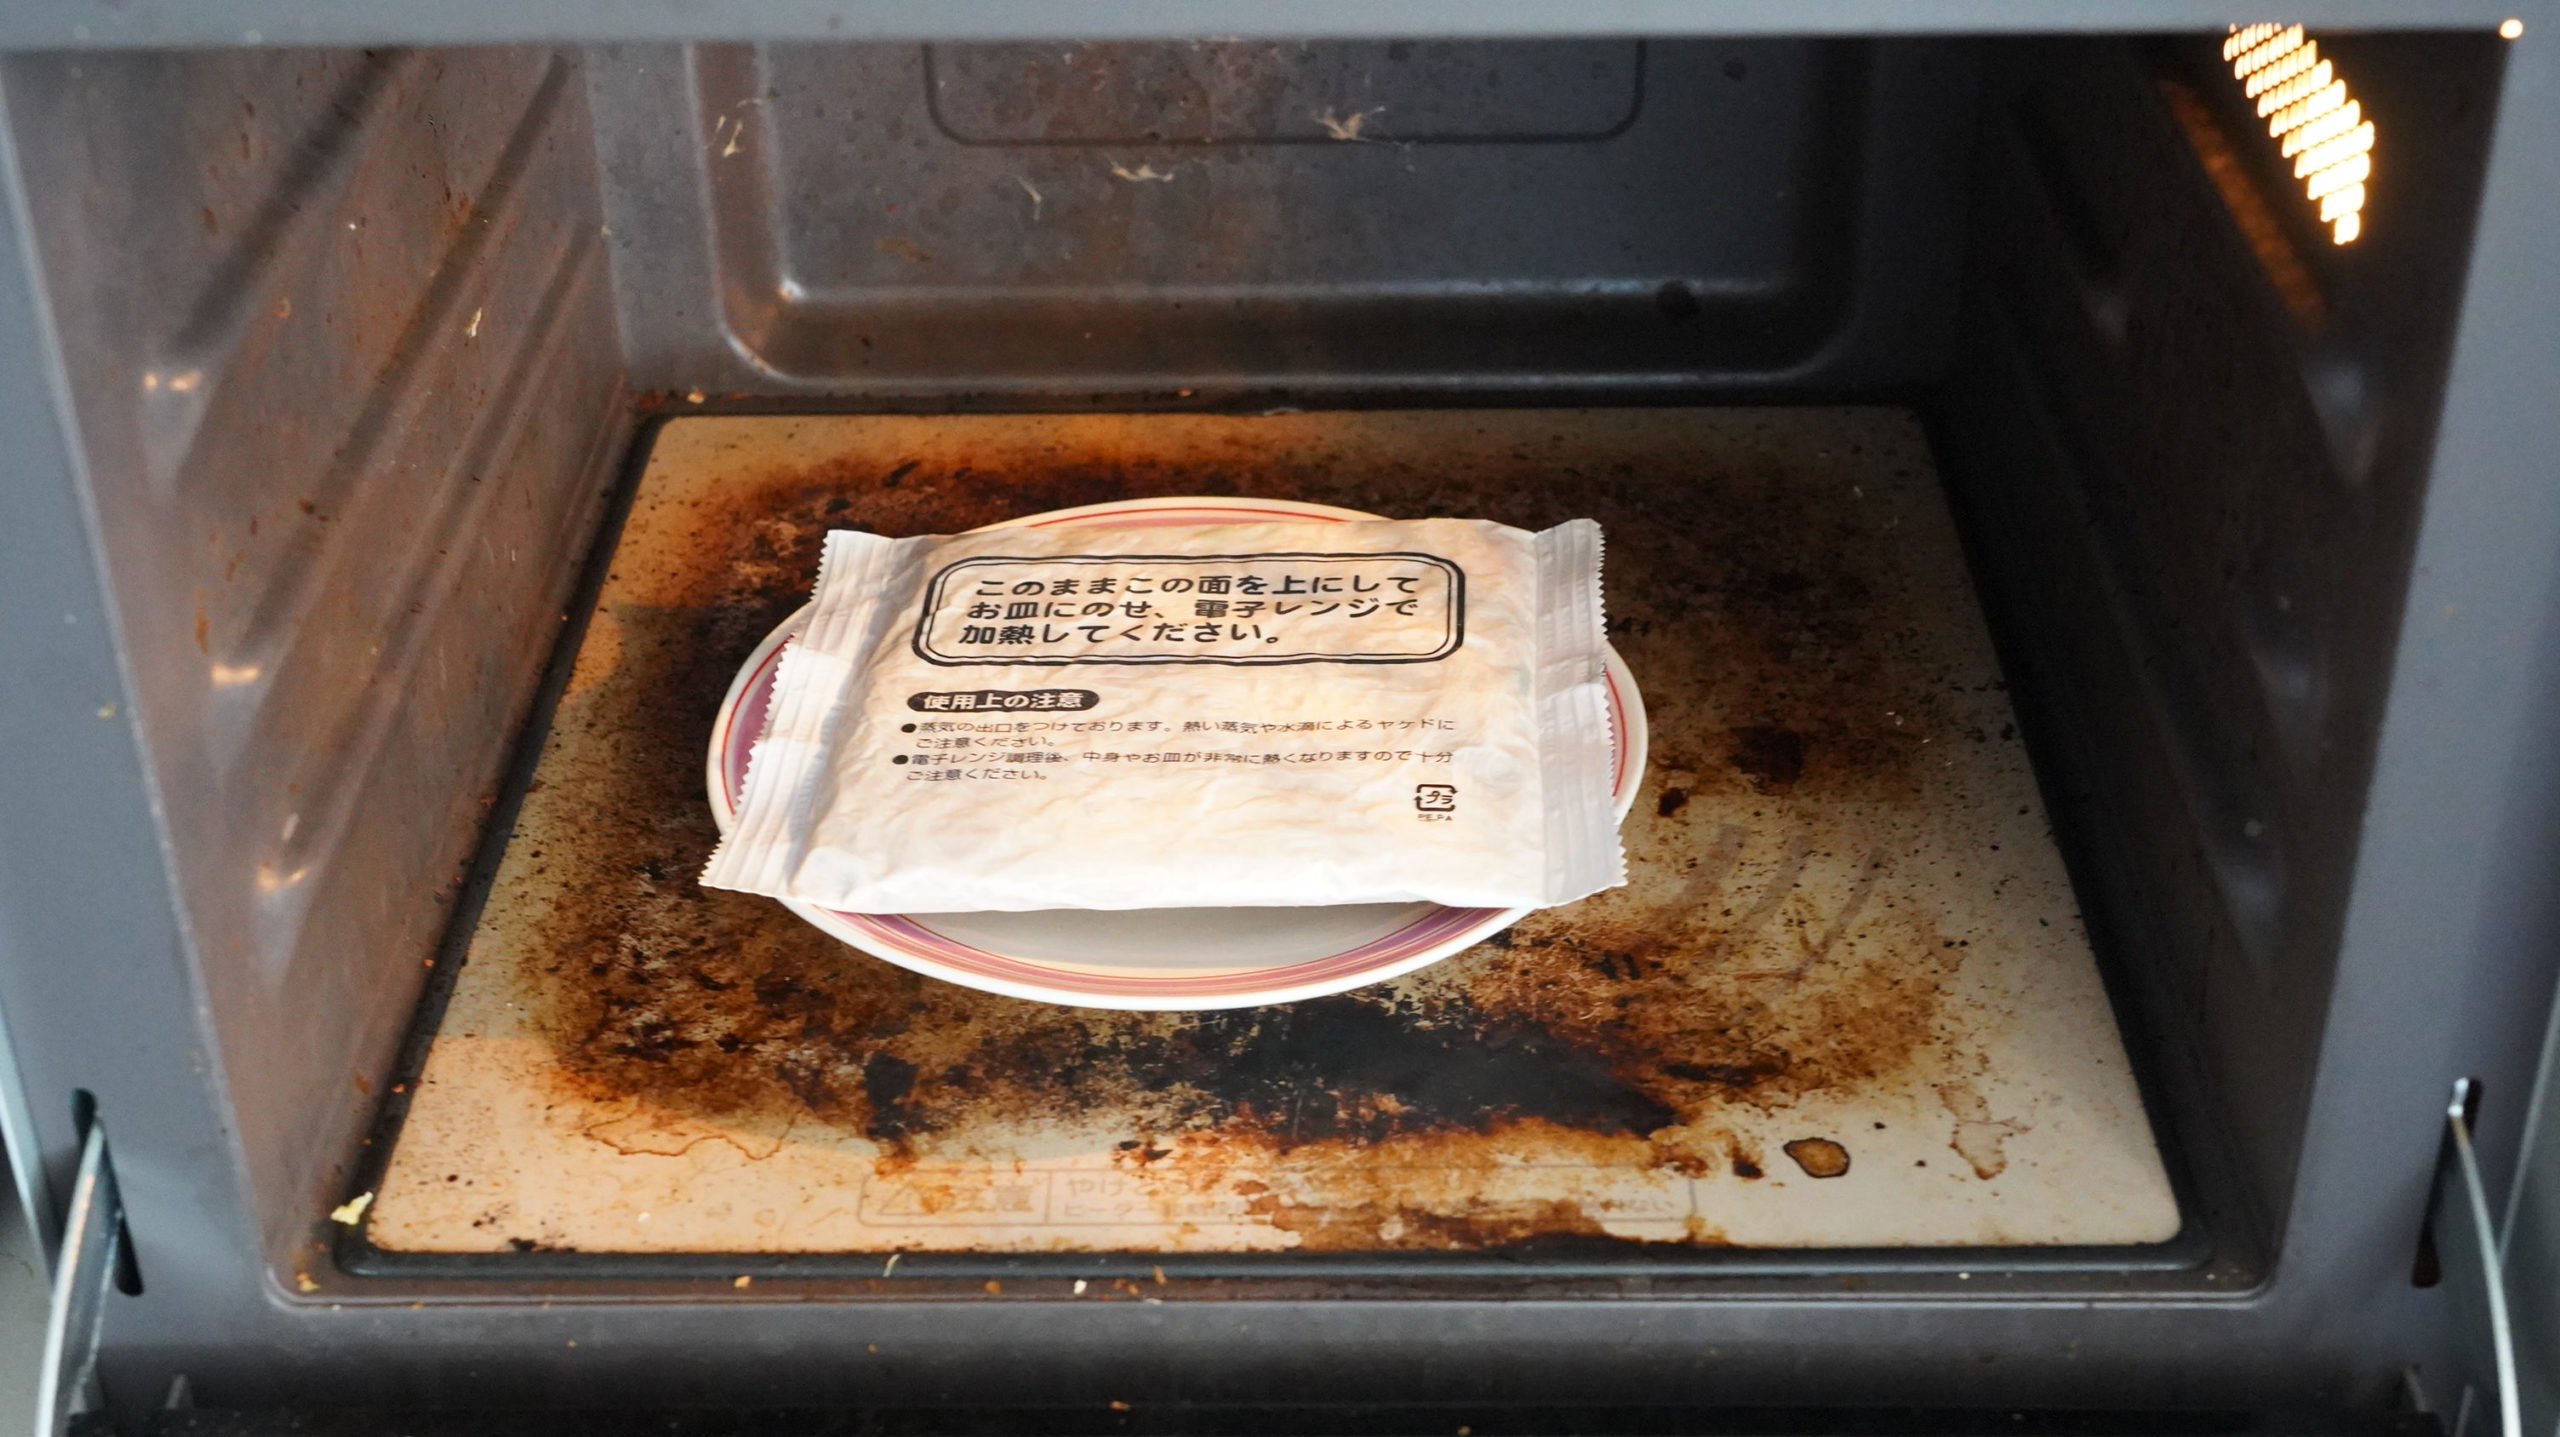 ローソンの冷凍食品「焼ビーフン」を電子レンジで加熱している写真